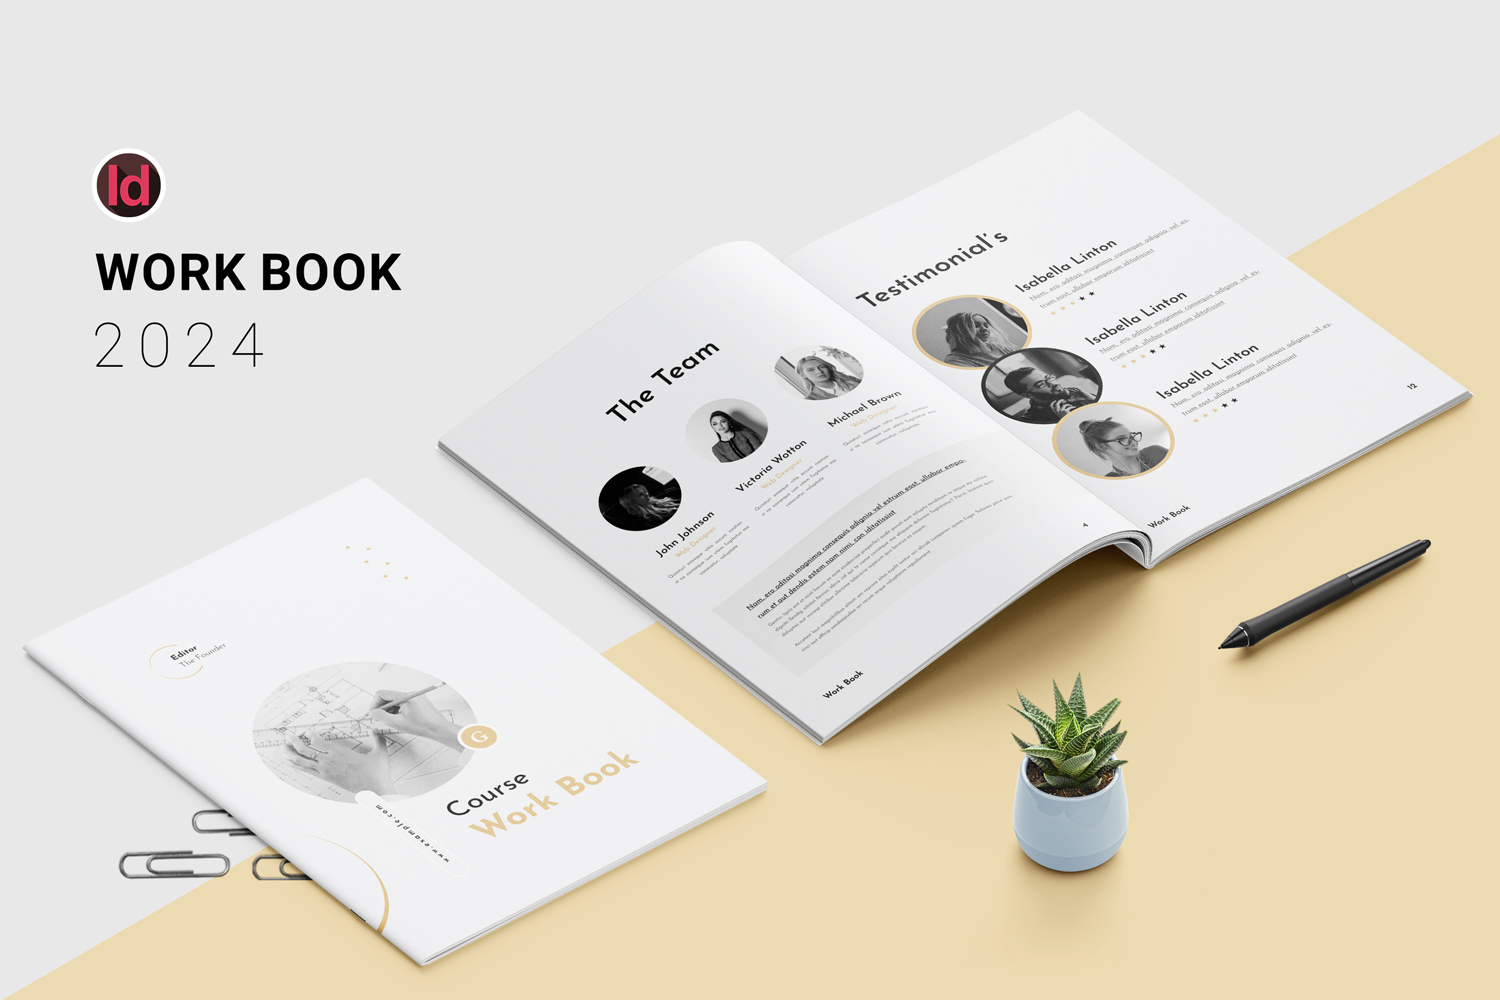 Course Workbook - Multi-purpose Workbook Template